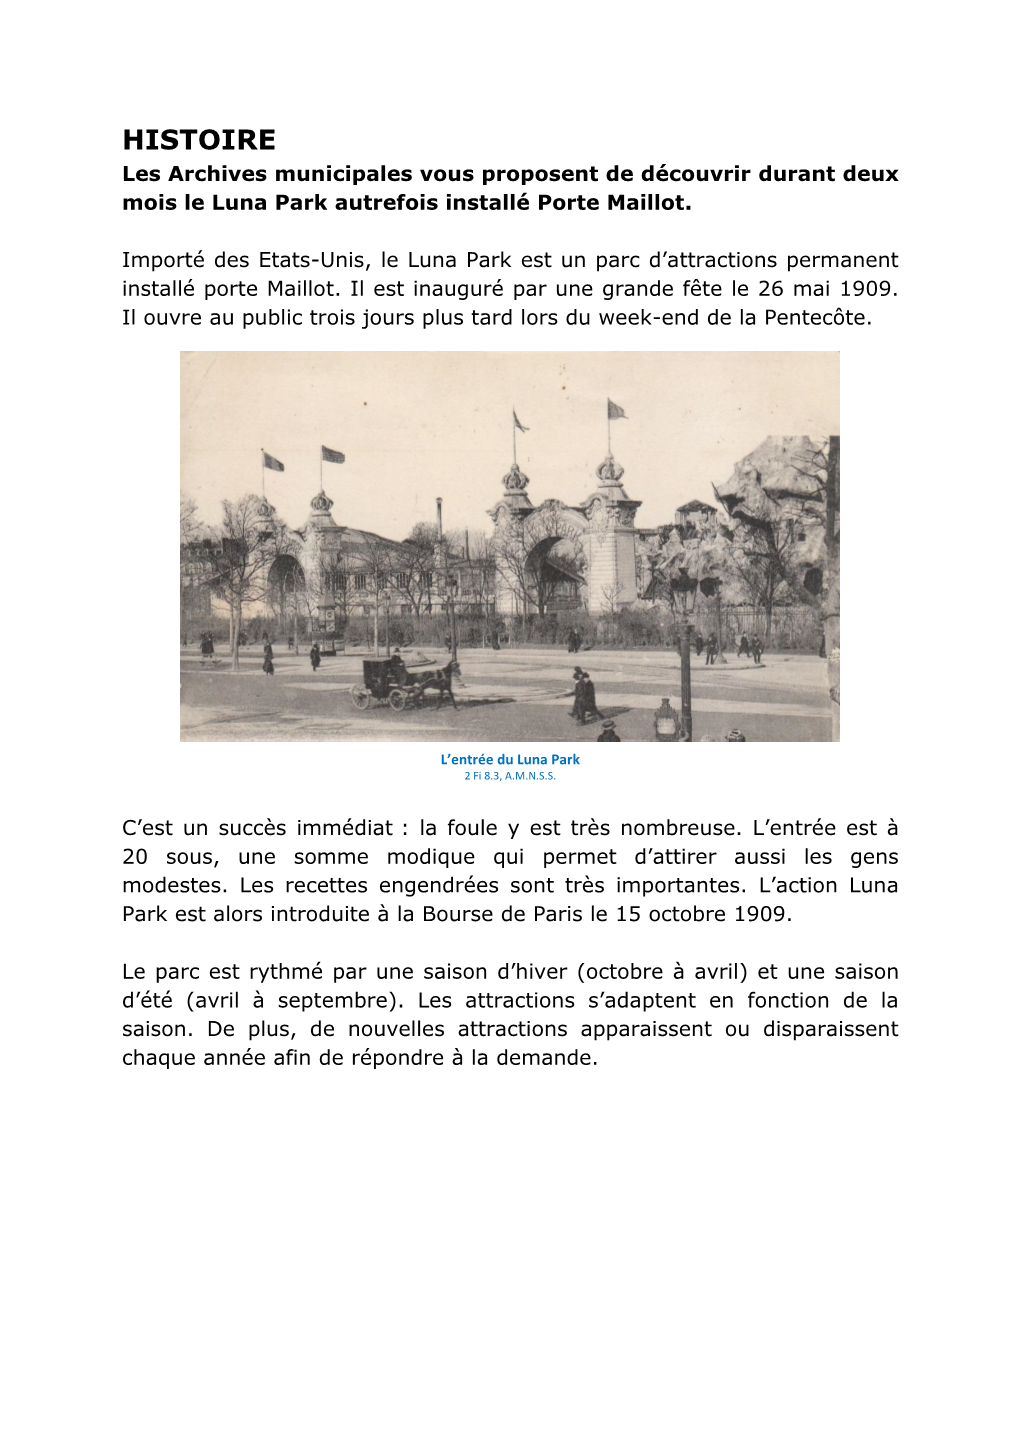 HISTOIRE Les Archives Municipales Vous Proposent De Découvrir Durant Deux Mois Le Luna Park Autrefois Installé Porte Maillot